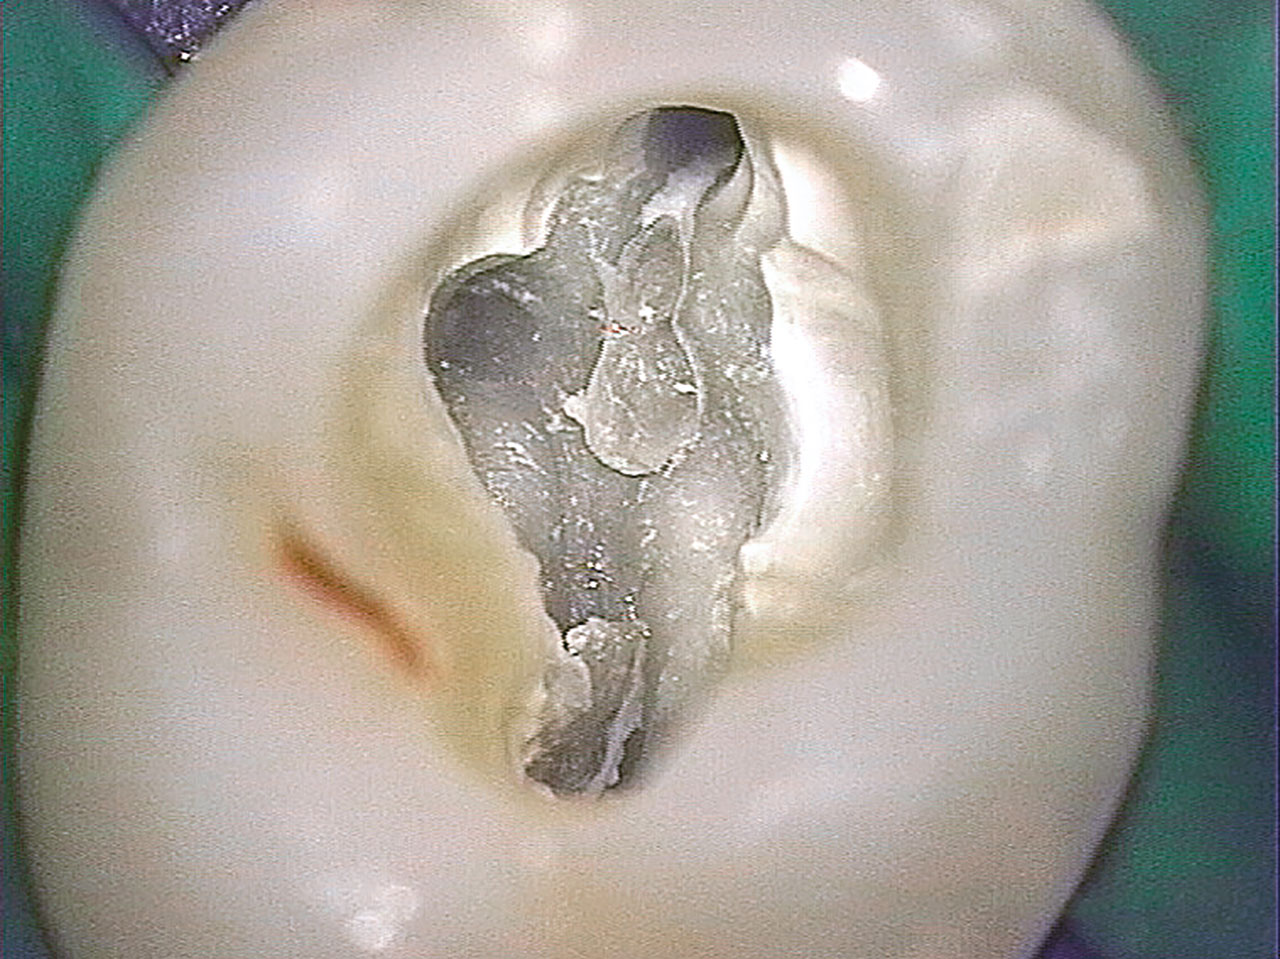 Abb. 7 Fallen solch kleine Dentikel (Pfeile) in den Wurzelkanal, können irreversible Blockaden mit Verlust an Arbeitslänge und unvollständiger Desinfektion und Obturation resultieren.